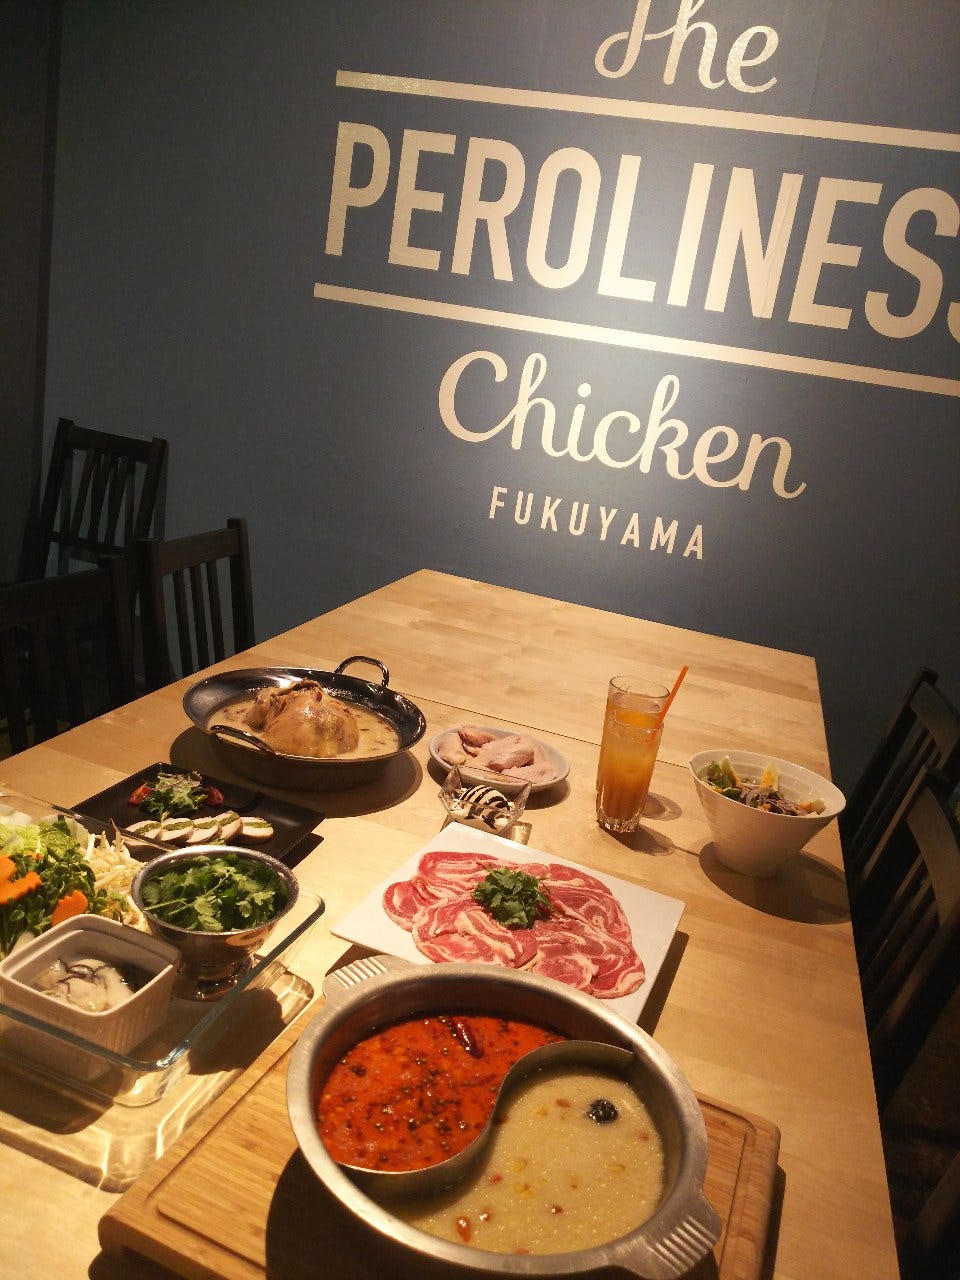 The PEROLINESS Chicken FUKUYAMA ザ・ペロリネスチキン フクヤマ